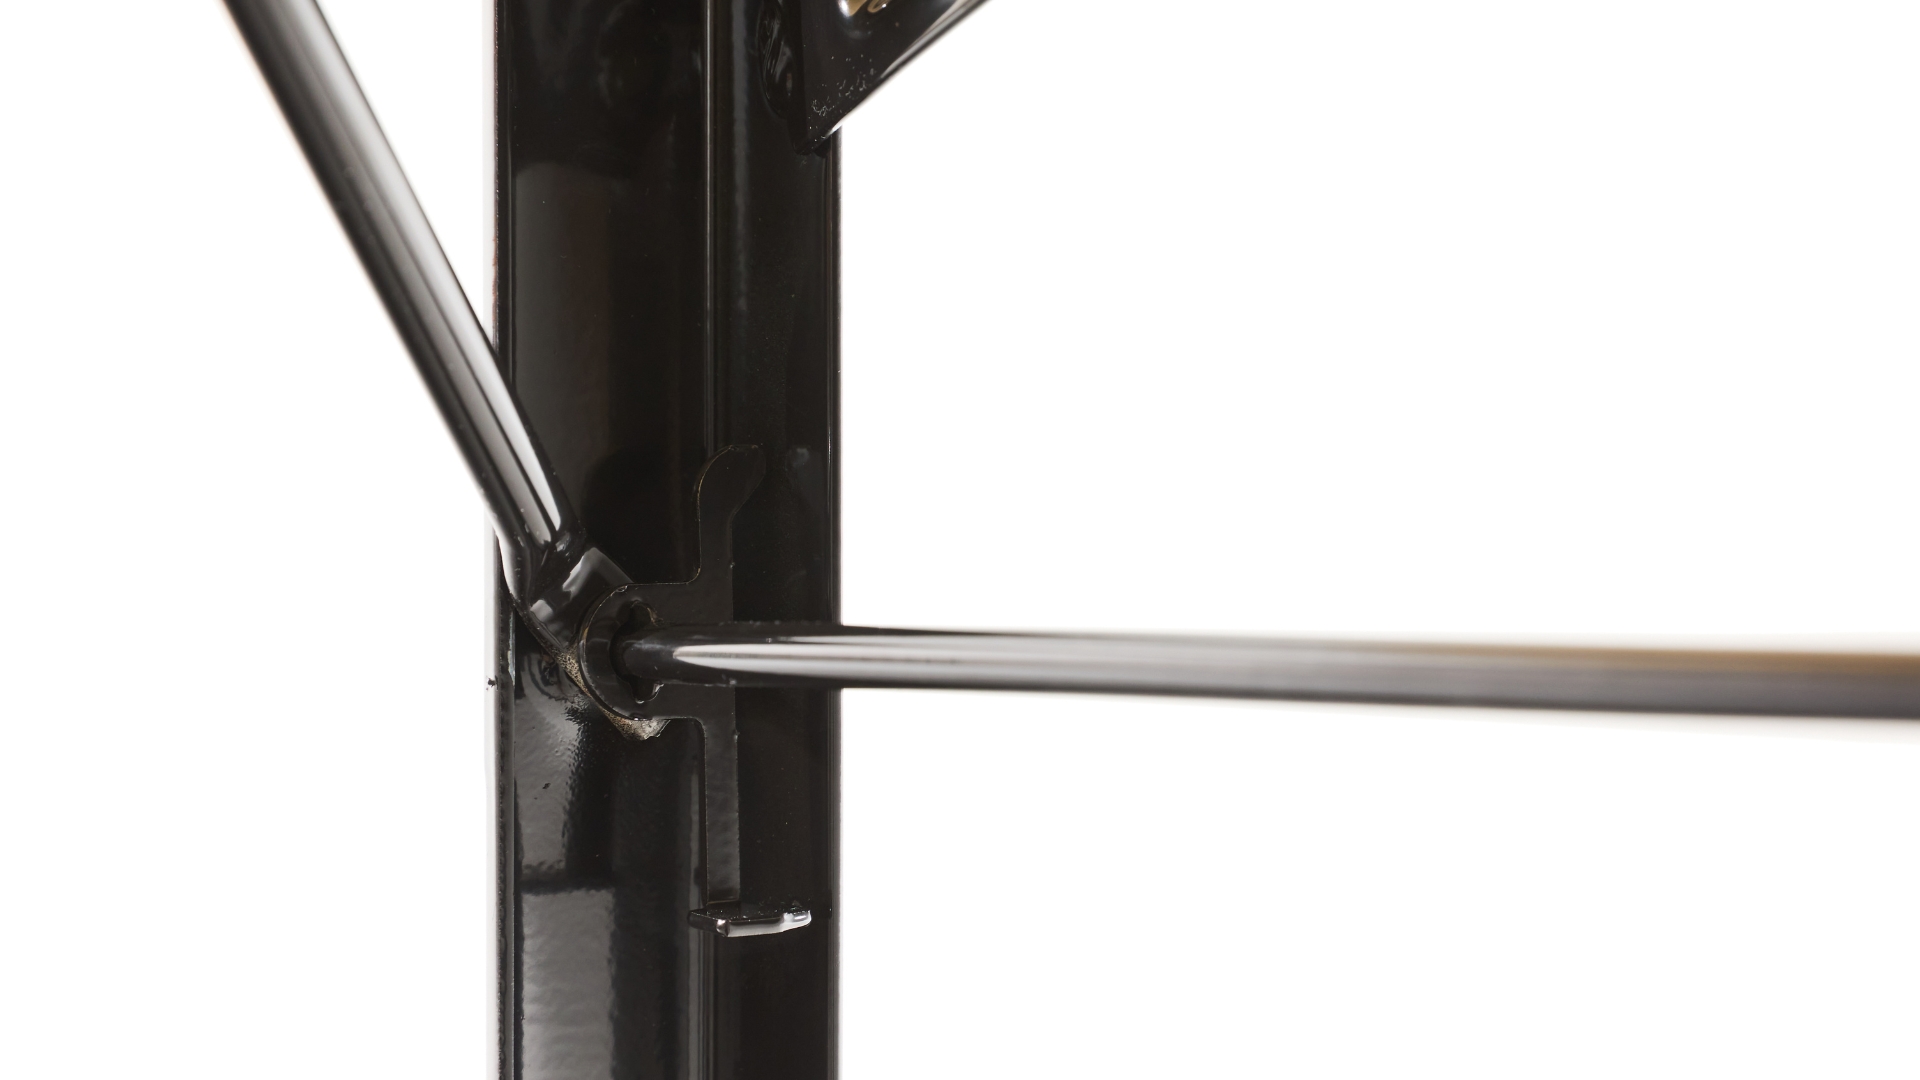 Schwarzes Untergestell der Bierzeltgarnitur mit Fokus auf den Bügelraster, der für Stabilität des Bügels beim Anheben der Garnitur  im geschlossenen Zustand sorgt.